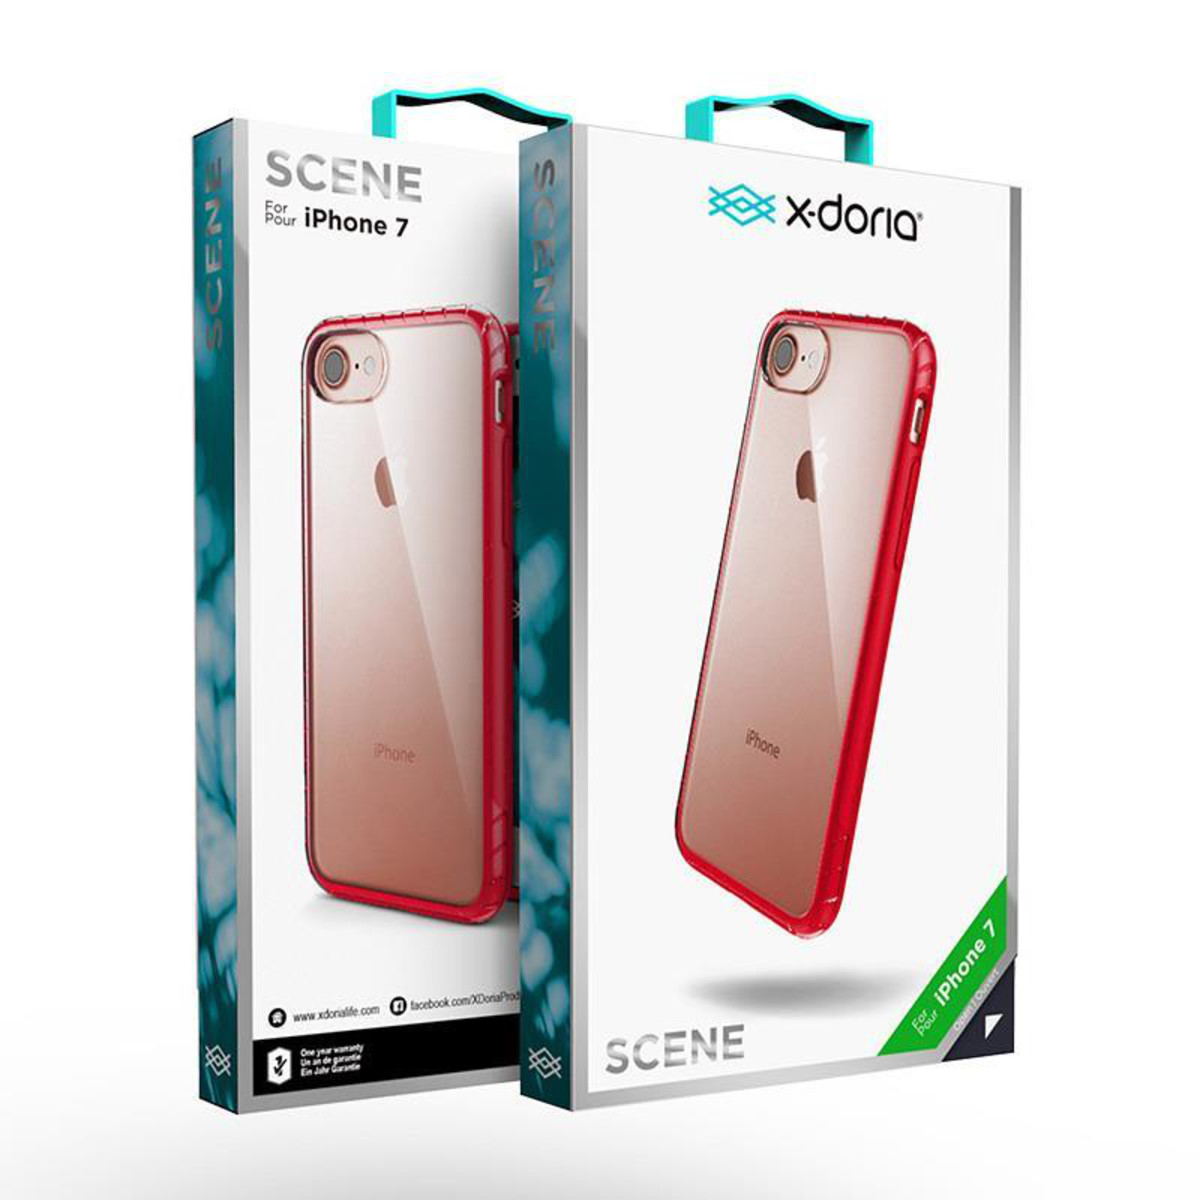 X-doria Apple iPhone 7/iPhone 8 Hard Case - Scene 3X170930A | 6950941449632 Rose